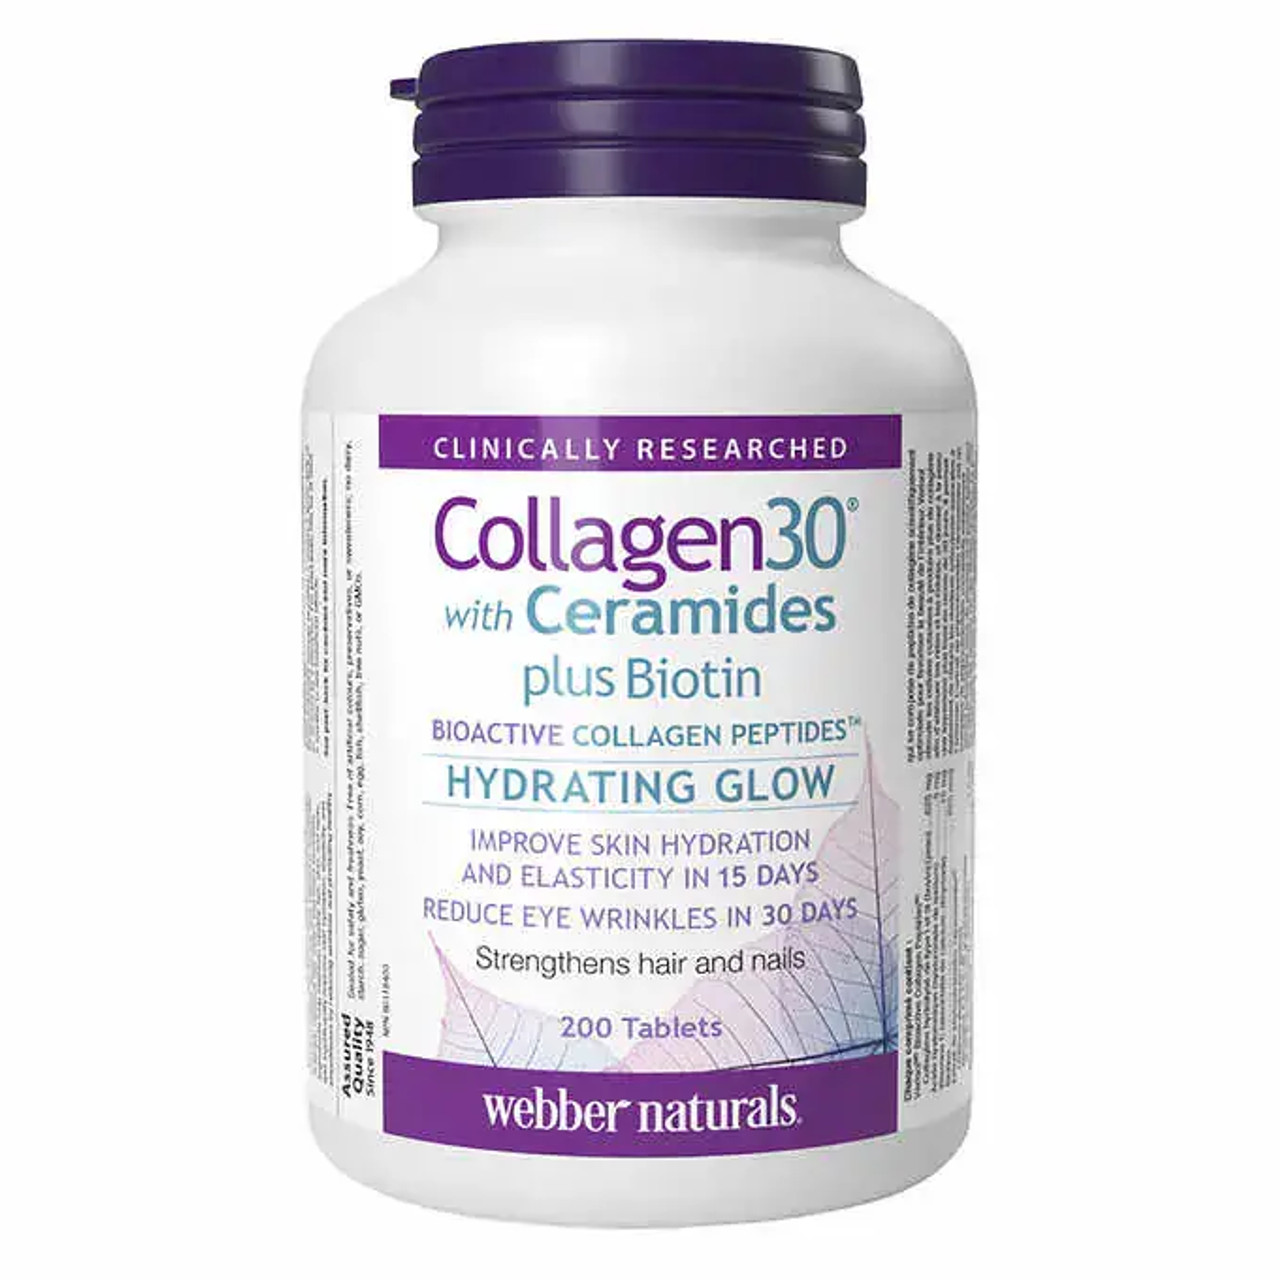 Webber Naturals Collagen30 with Ceramides plus Biotin - 200 Tablets | Skin & Hair Nourishment-Chicken Pieces